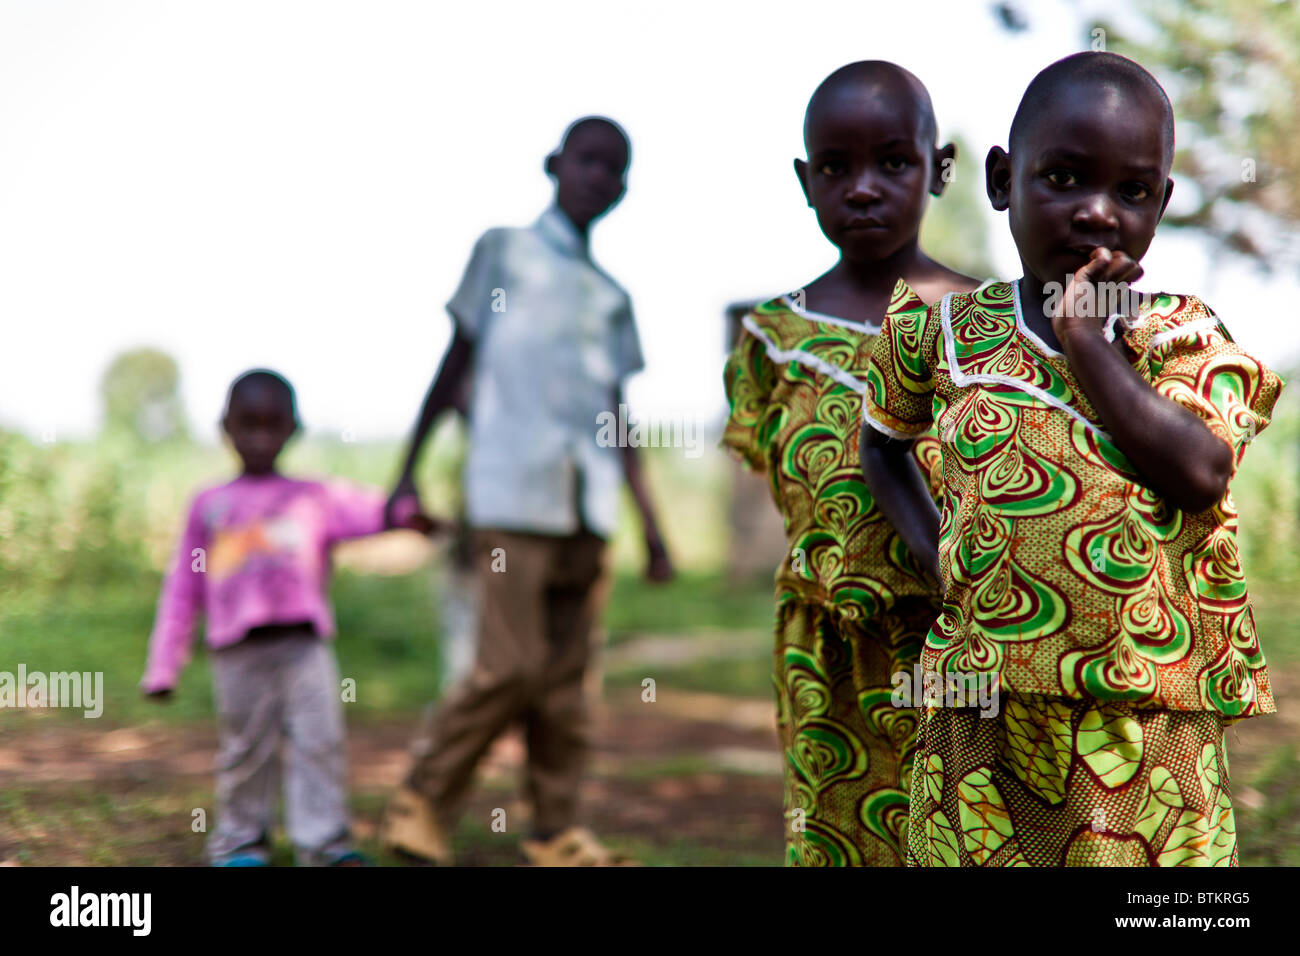 Les jumeaux Kenyan posant dans des vêtements identiques. Banque D'Images